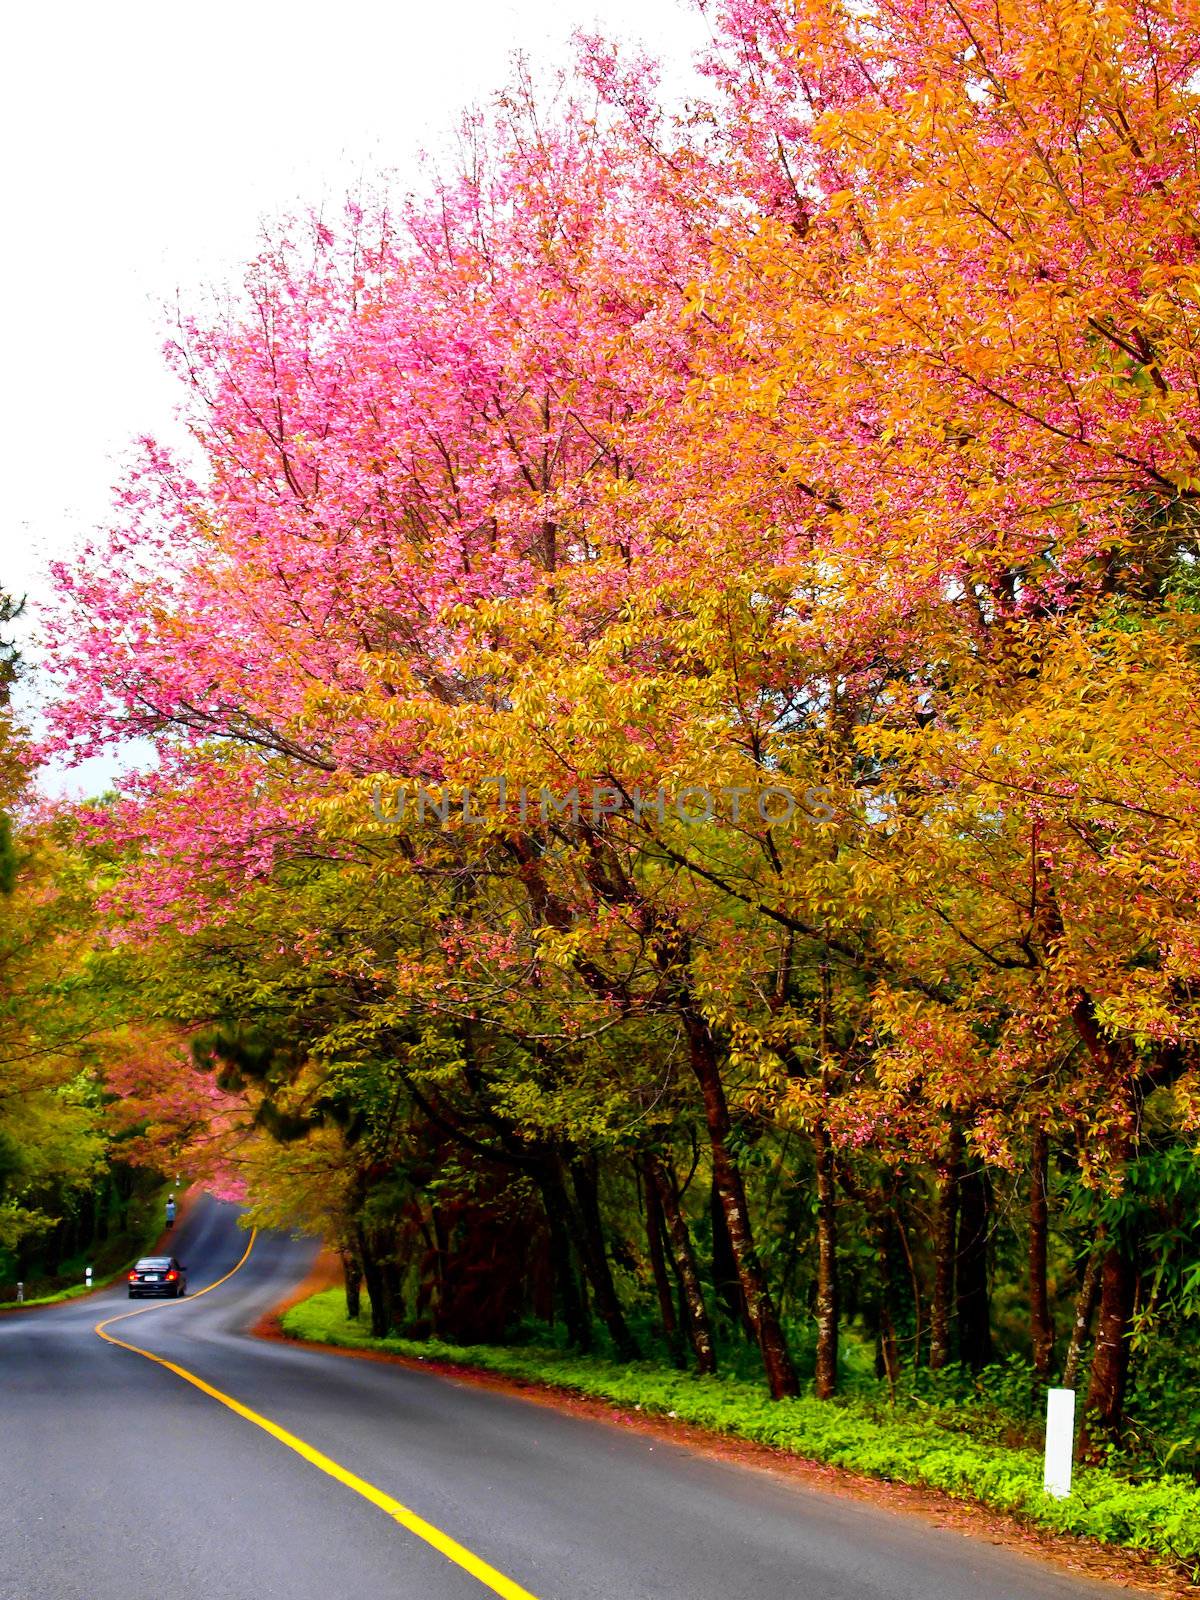 Pink sakura and the road